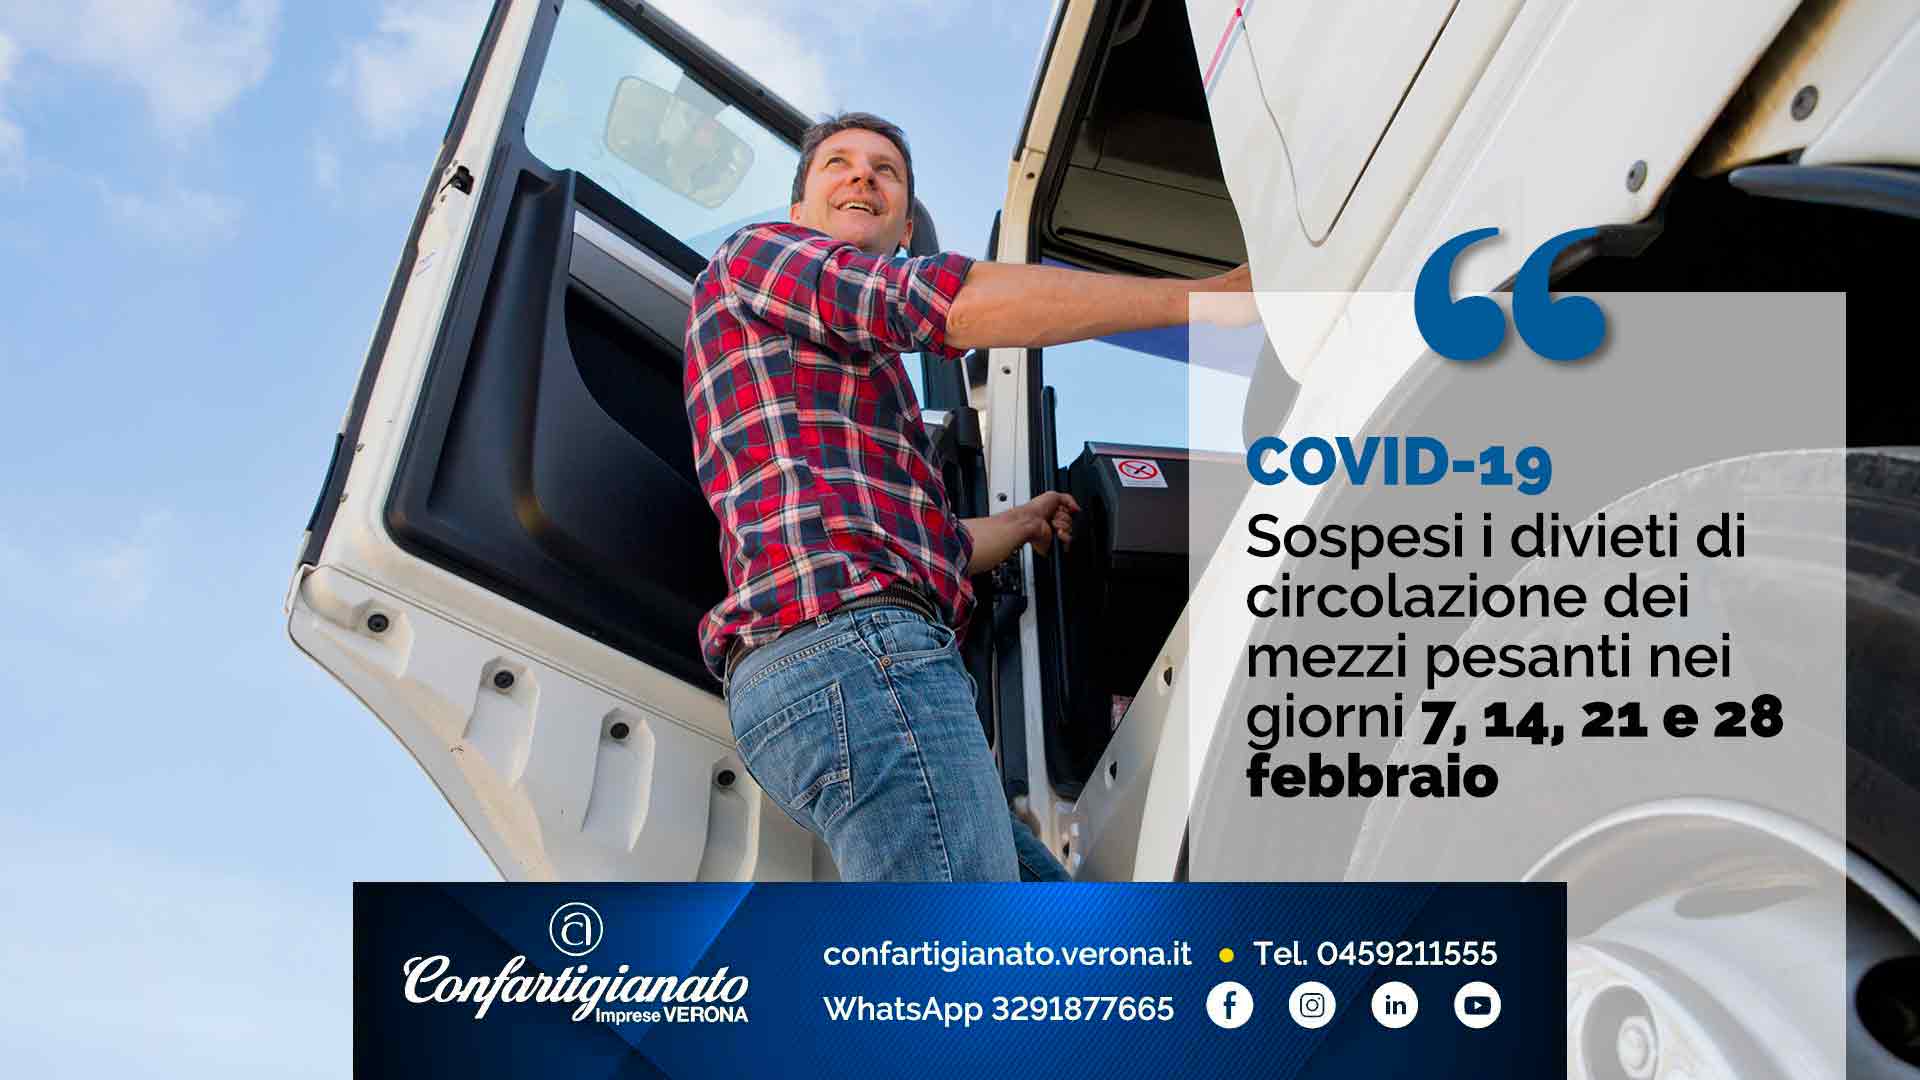 COVID-19 – Sospesi i divieti di circolazione dei mezzi pesanti nei giorni 7, 14, 21 e 28 febbraio